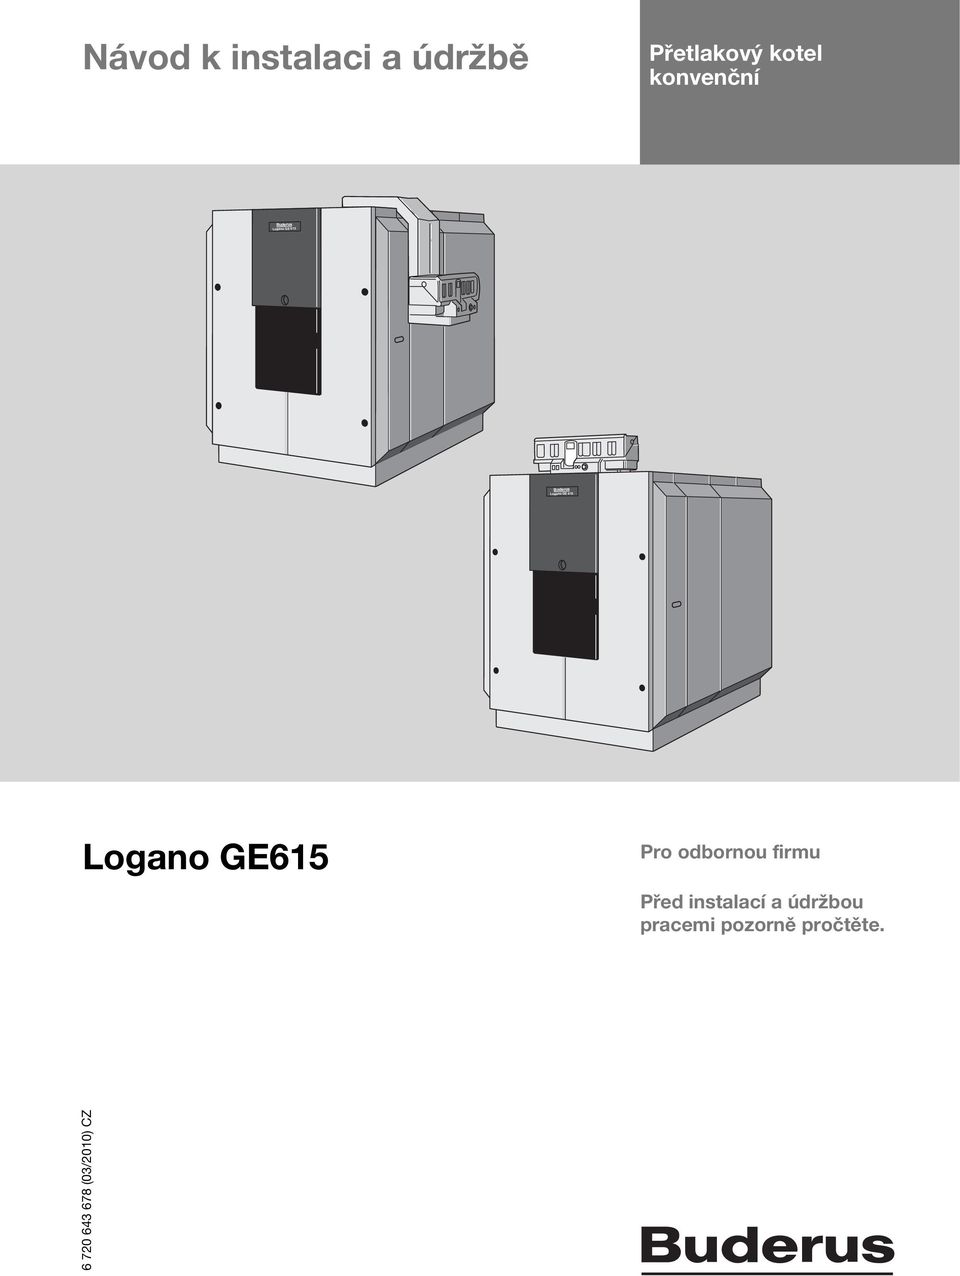 615 Logano GE615 Pro odbornou firmu Před instalací